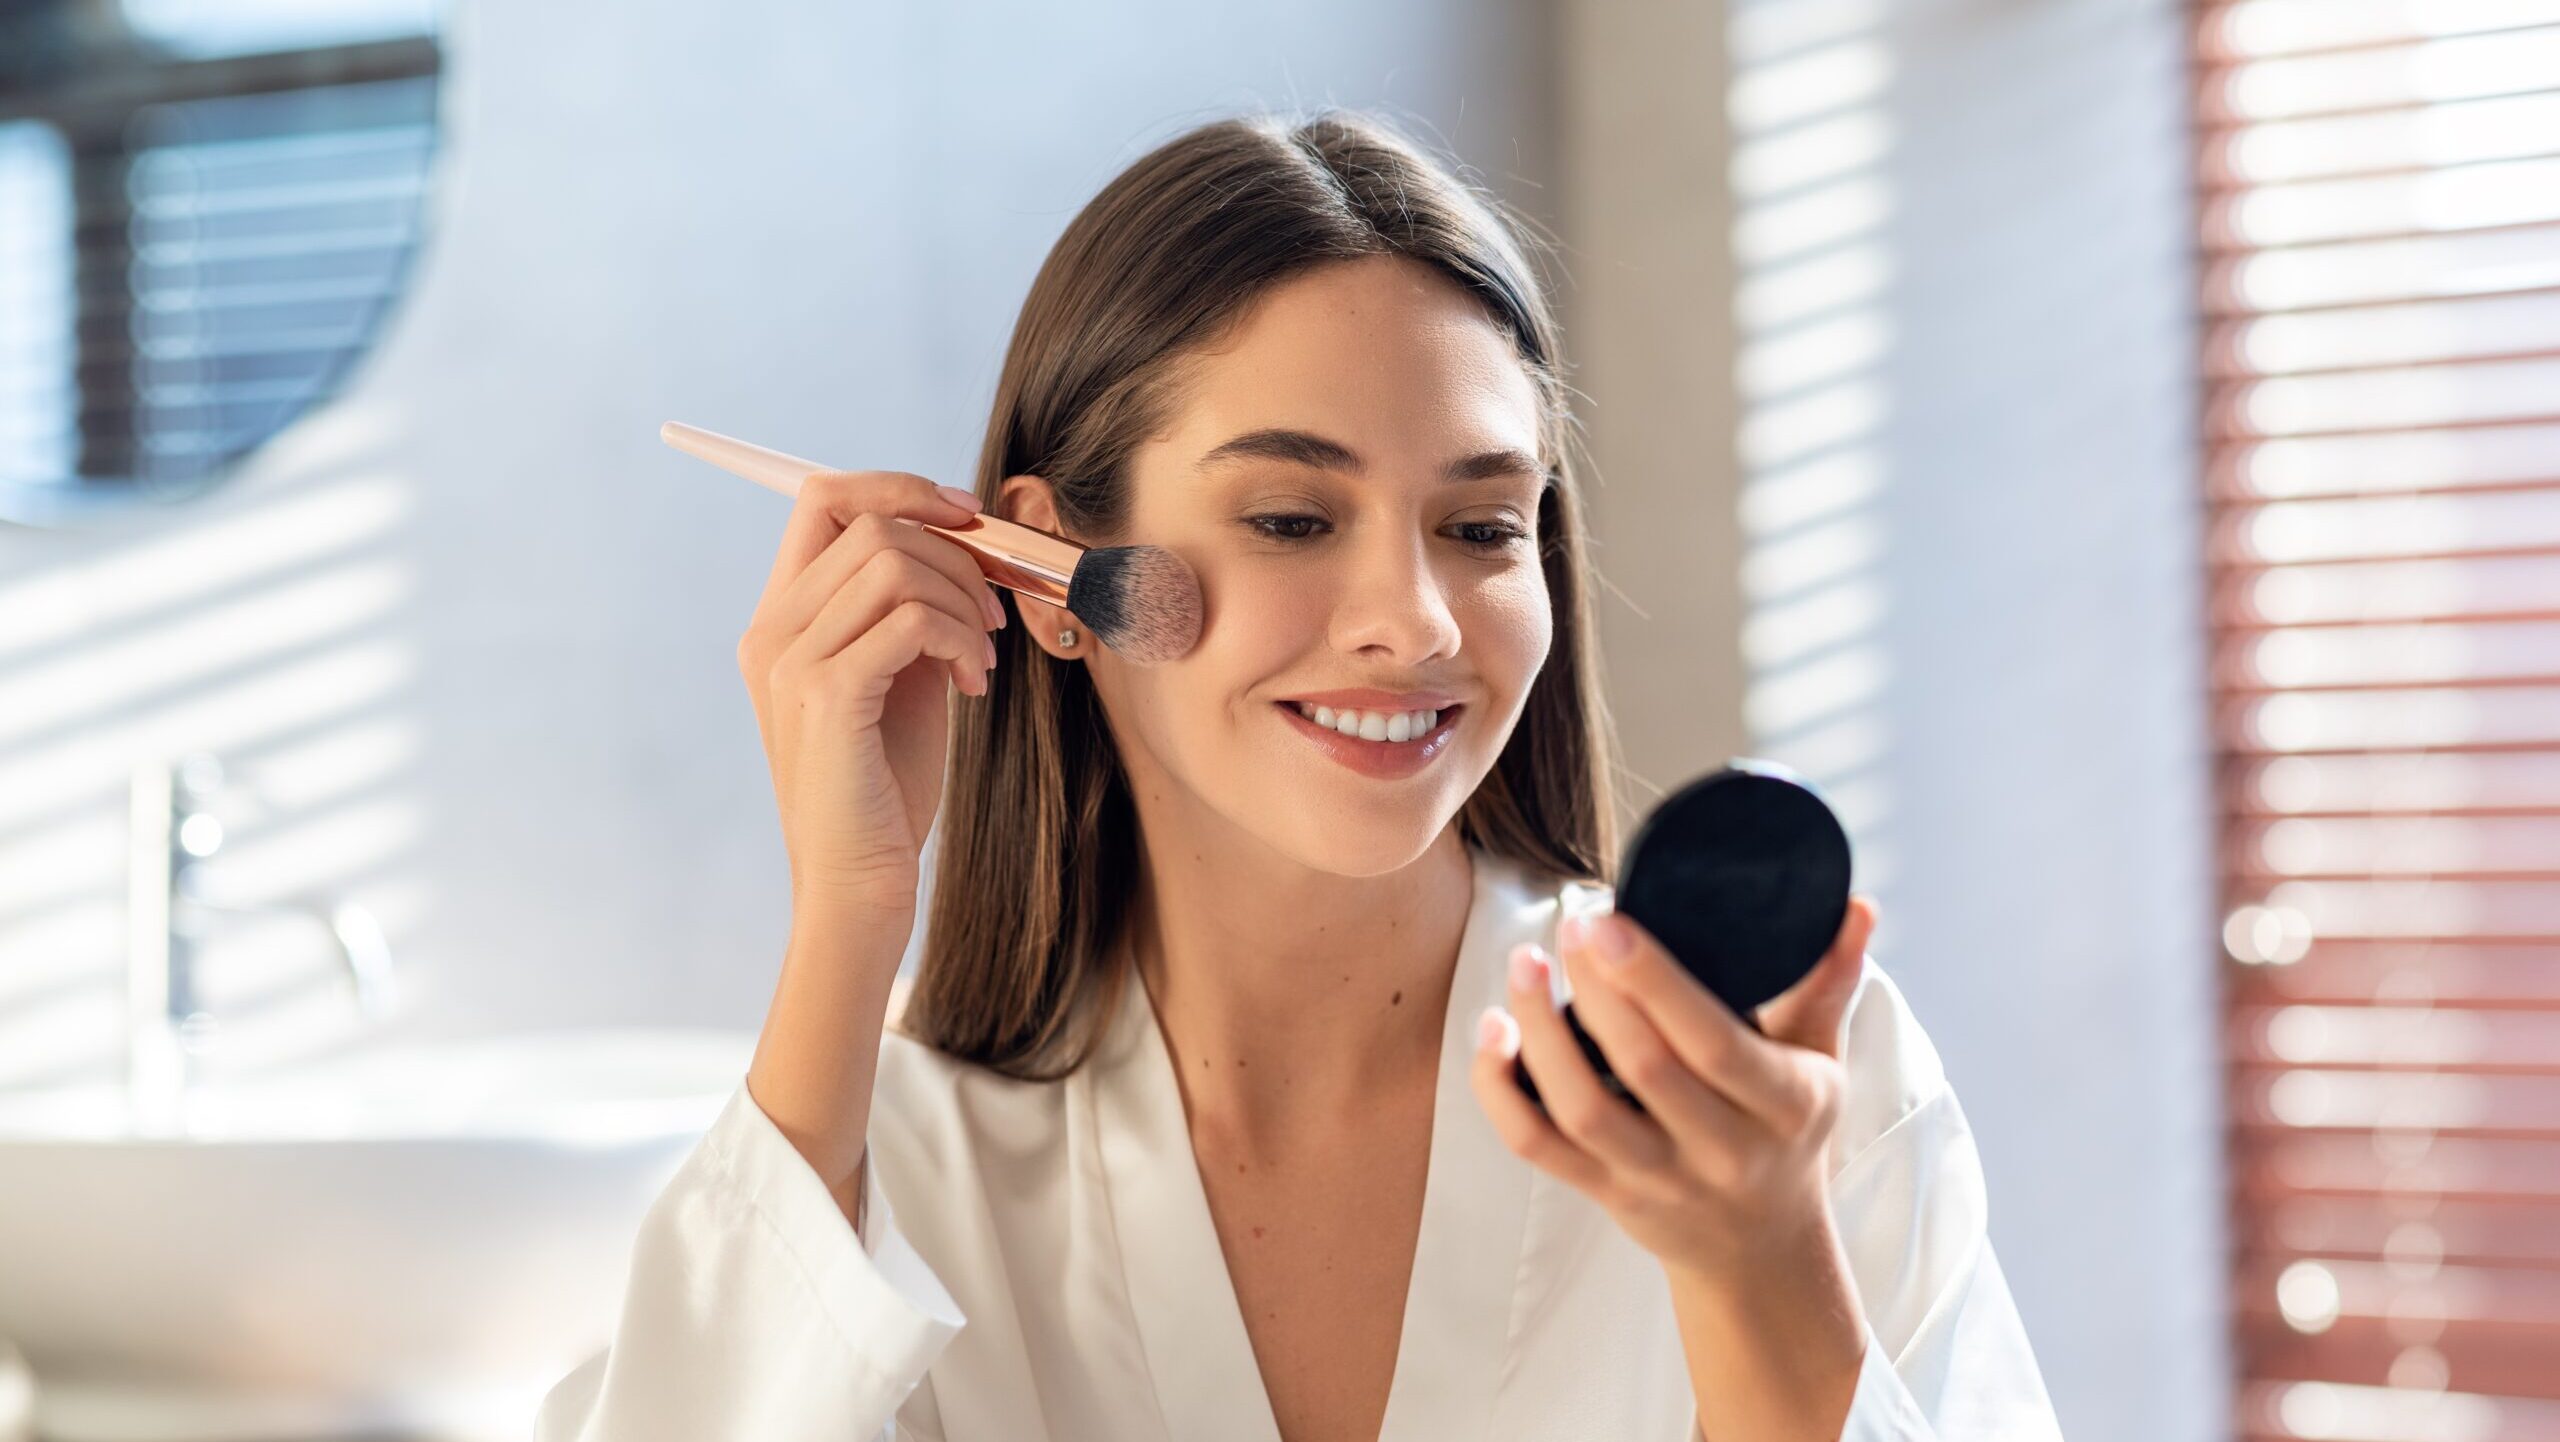 Schminkpinsel-Guide: Diese Pinsel brauchst du für das perfekte Make-up